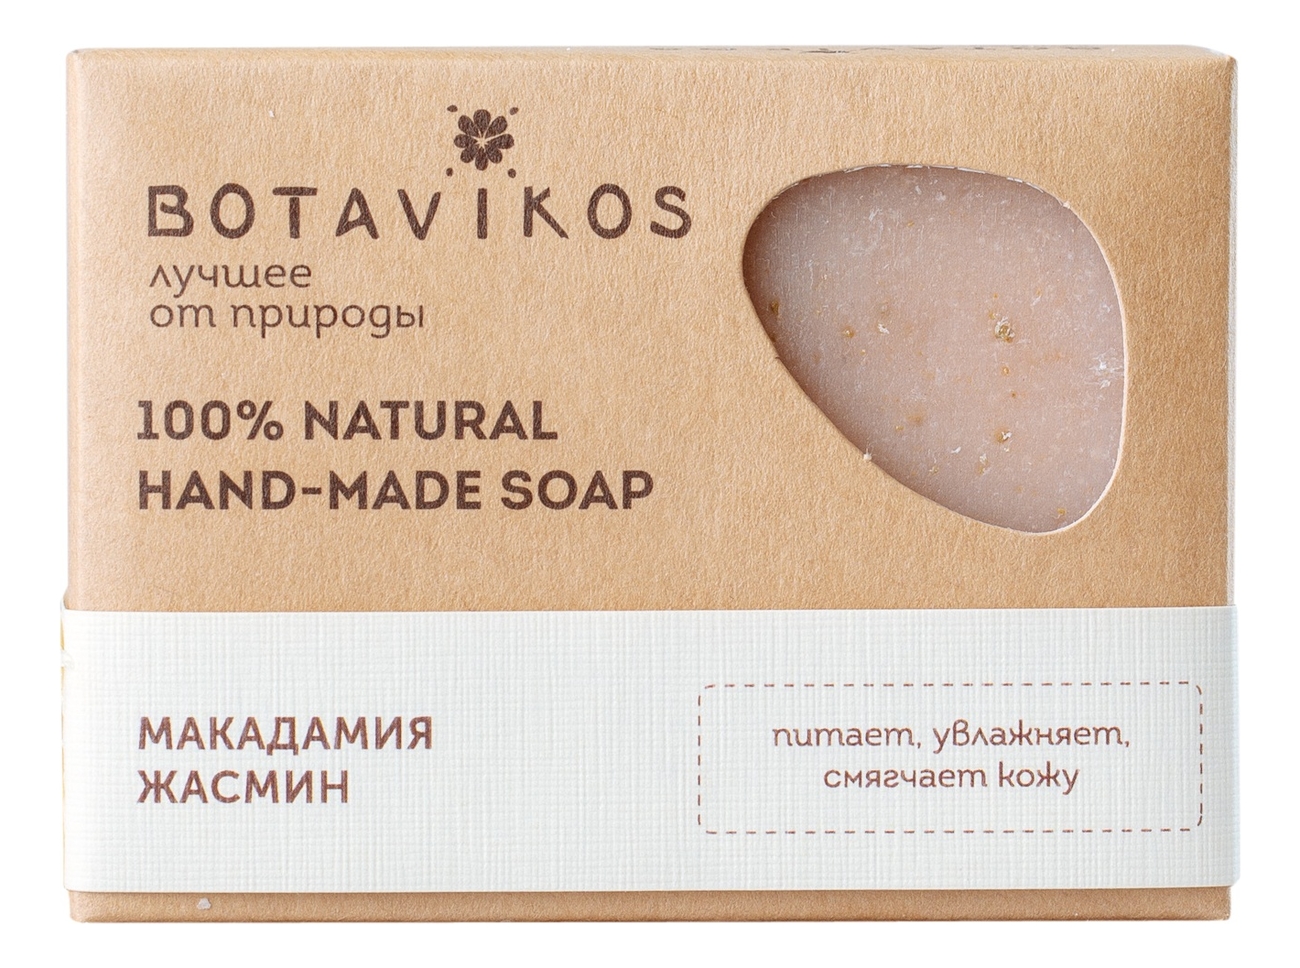 Натуральное мыло ручной работы 100% Natural Hand-Made Soap 100г (макадамия и жасмин) натуральное мыло ручной работы кастилия castile natural hand made soap 100г